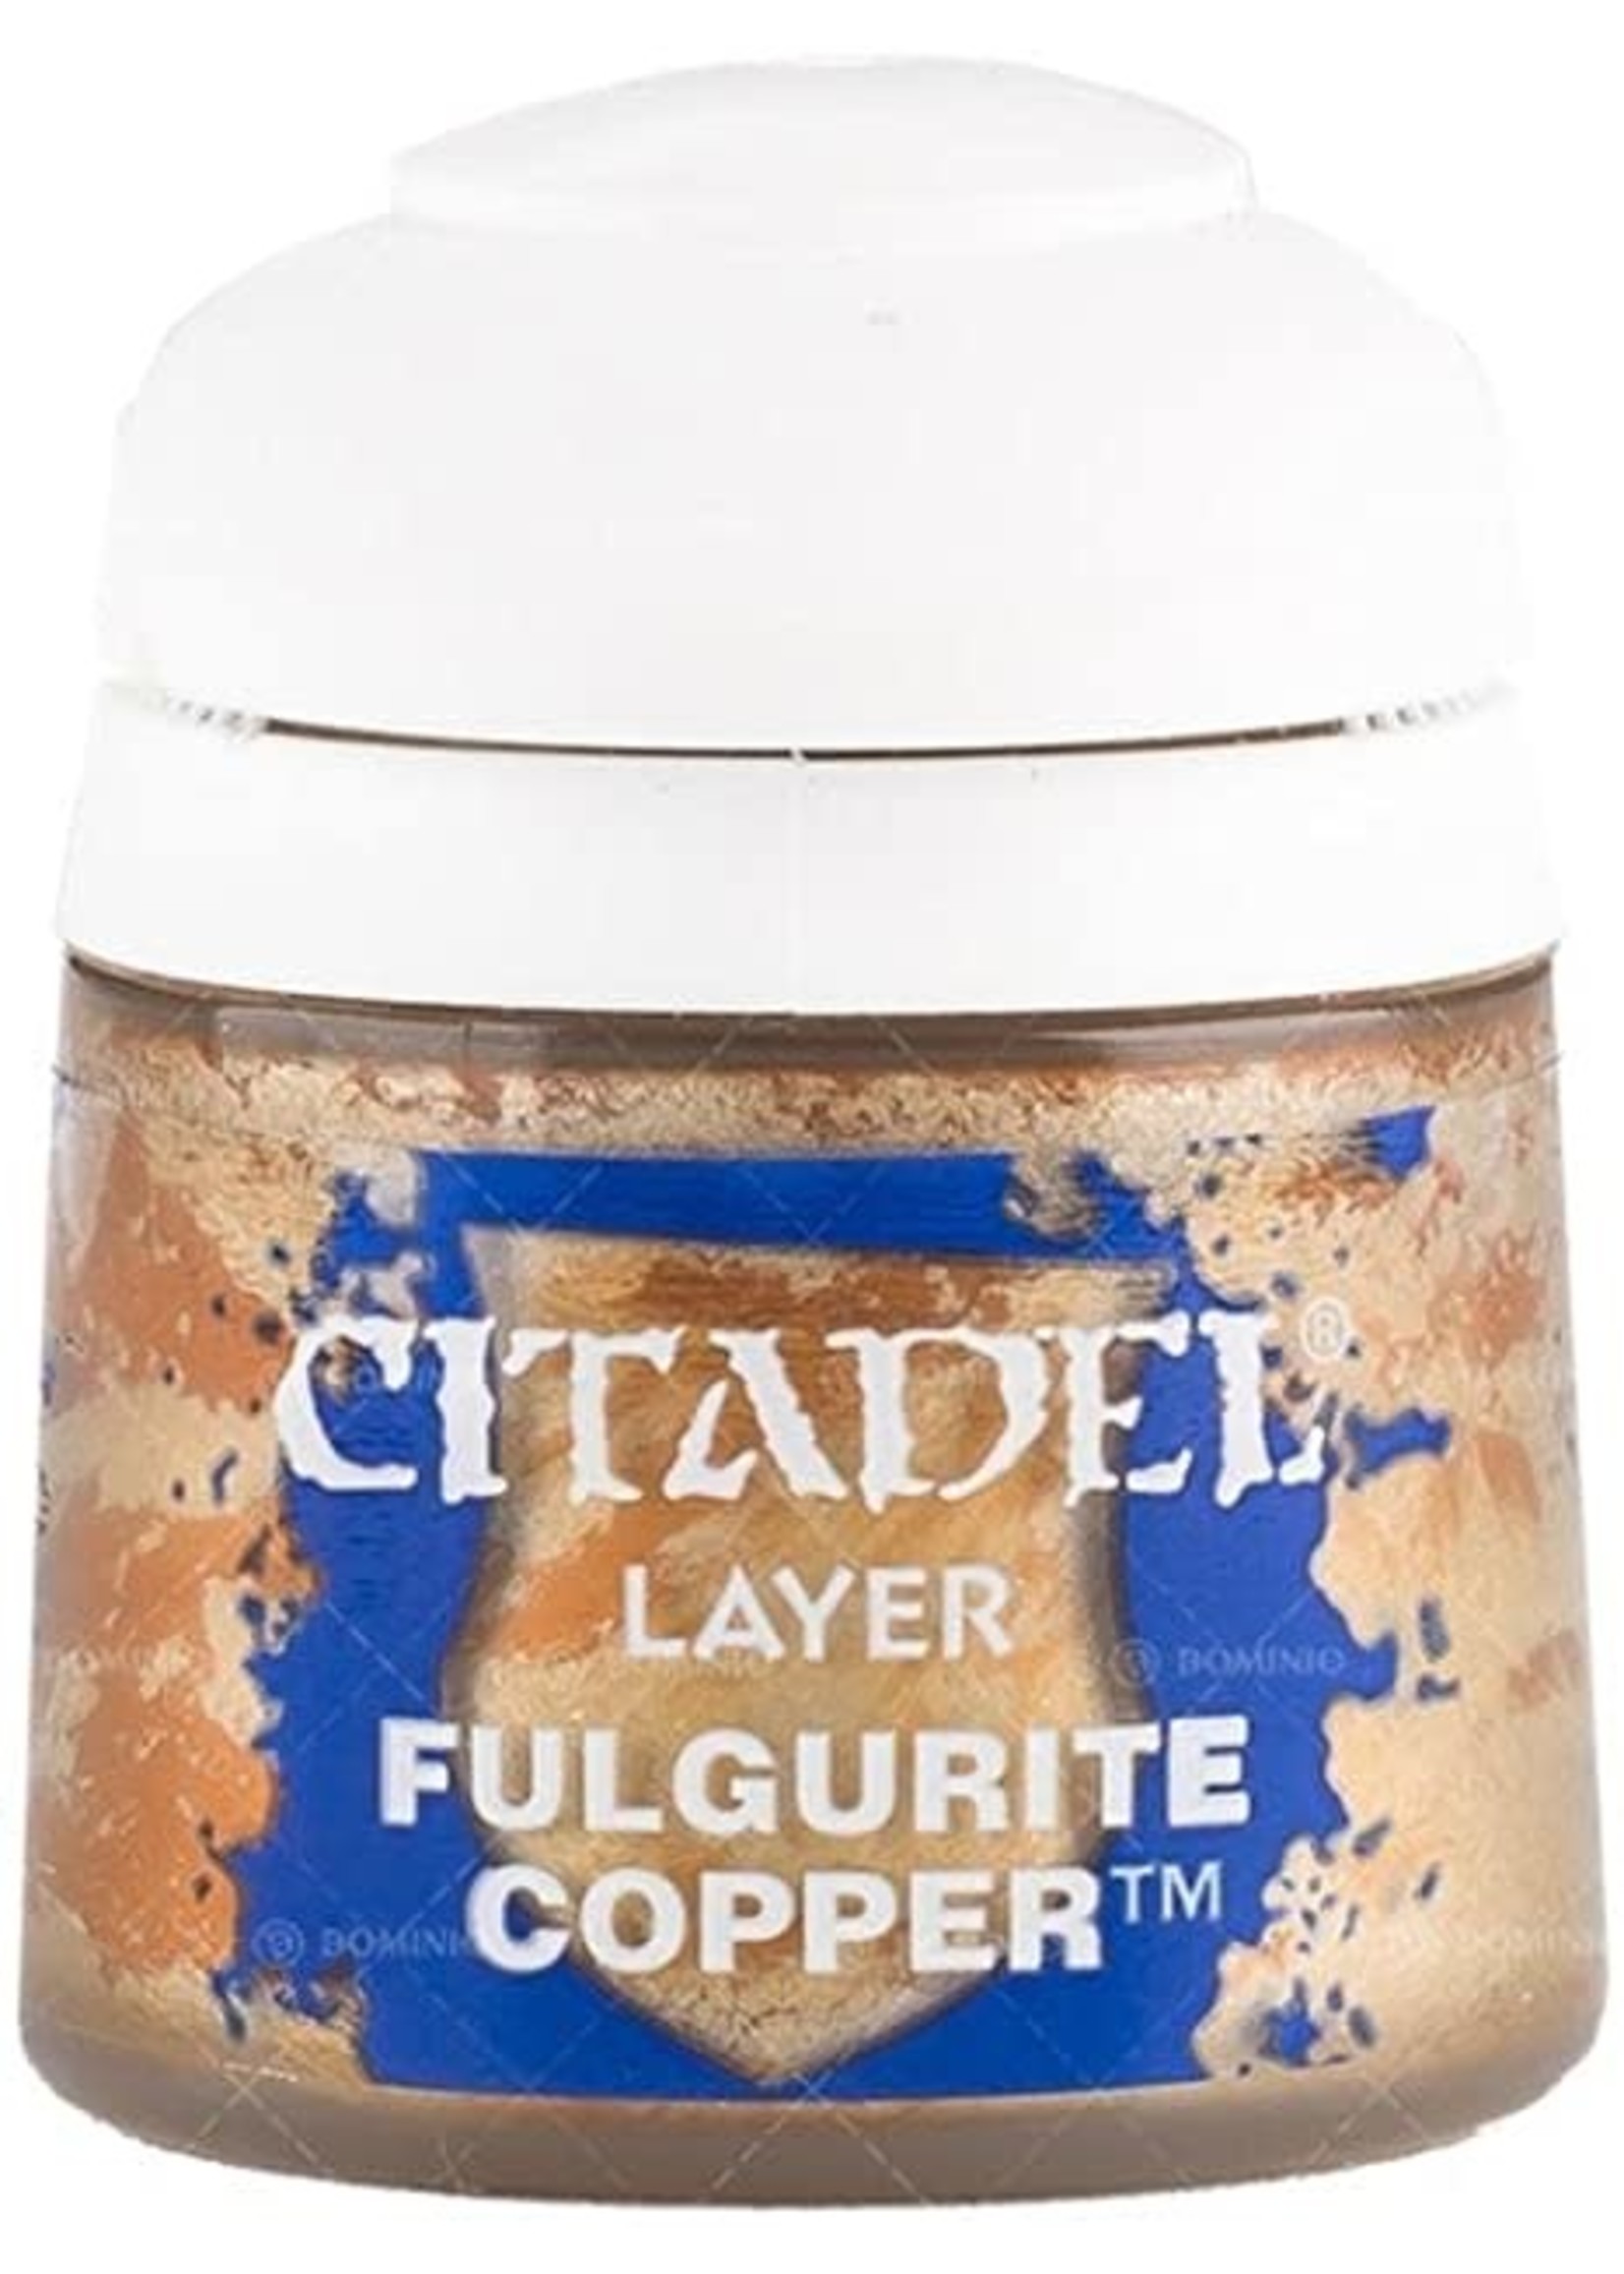 Citadel Paint Layer: Fulgurite Copper